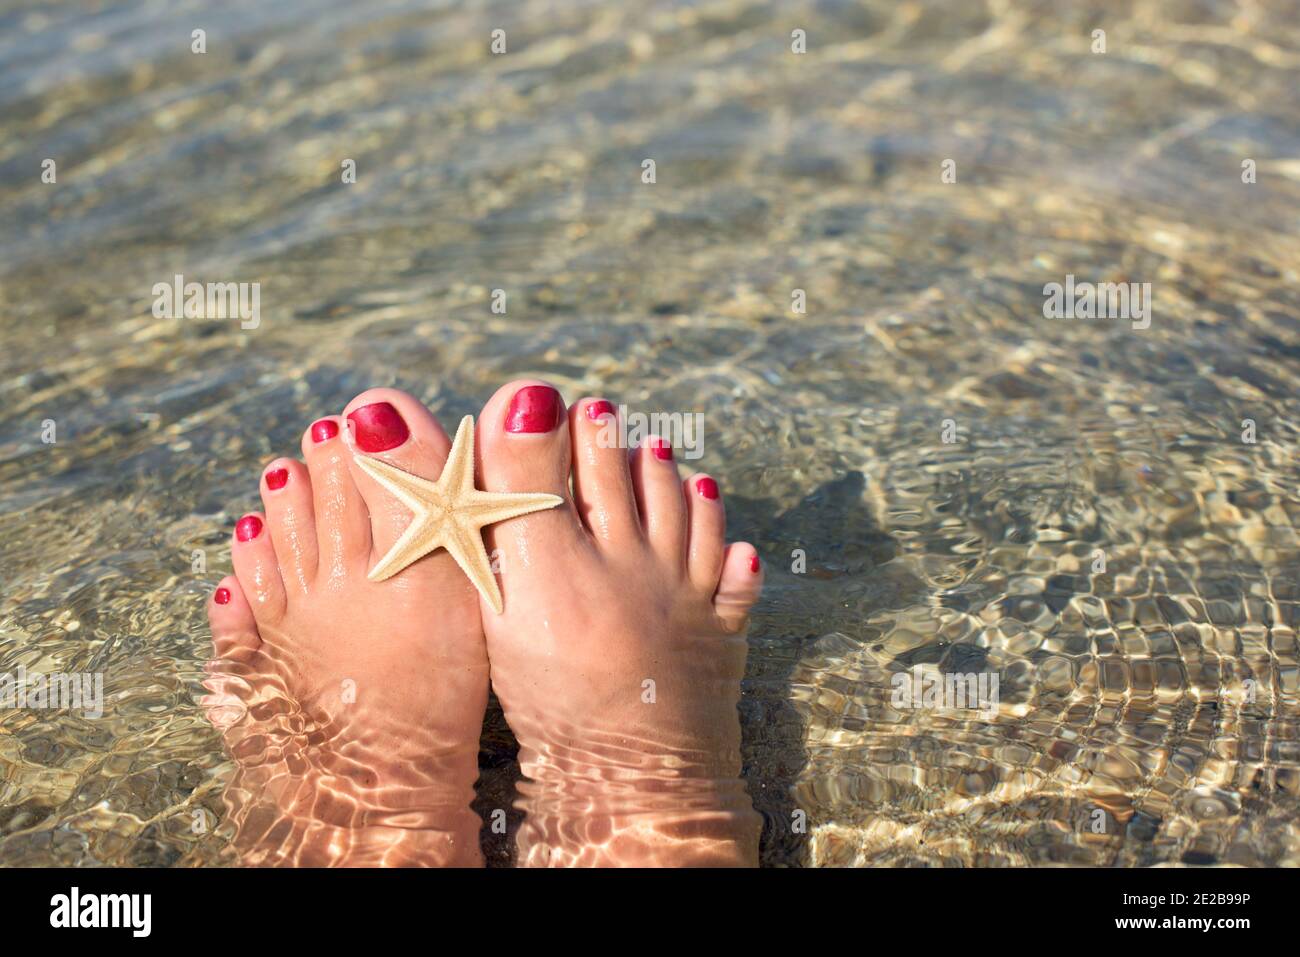 Frauenfüße mit einer Pediküre, die am Strand im Wasser eingetaucht sind. Auf den großen Zehen befindet sich ein Seestern Stockfoto